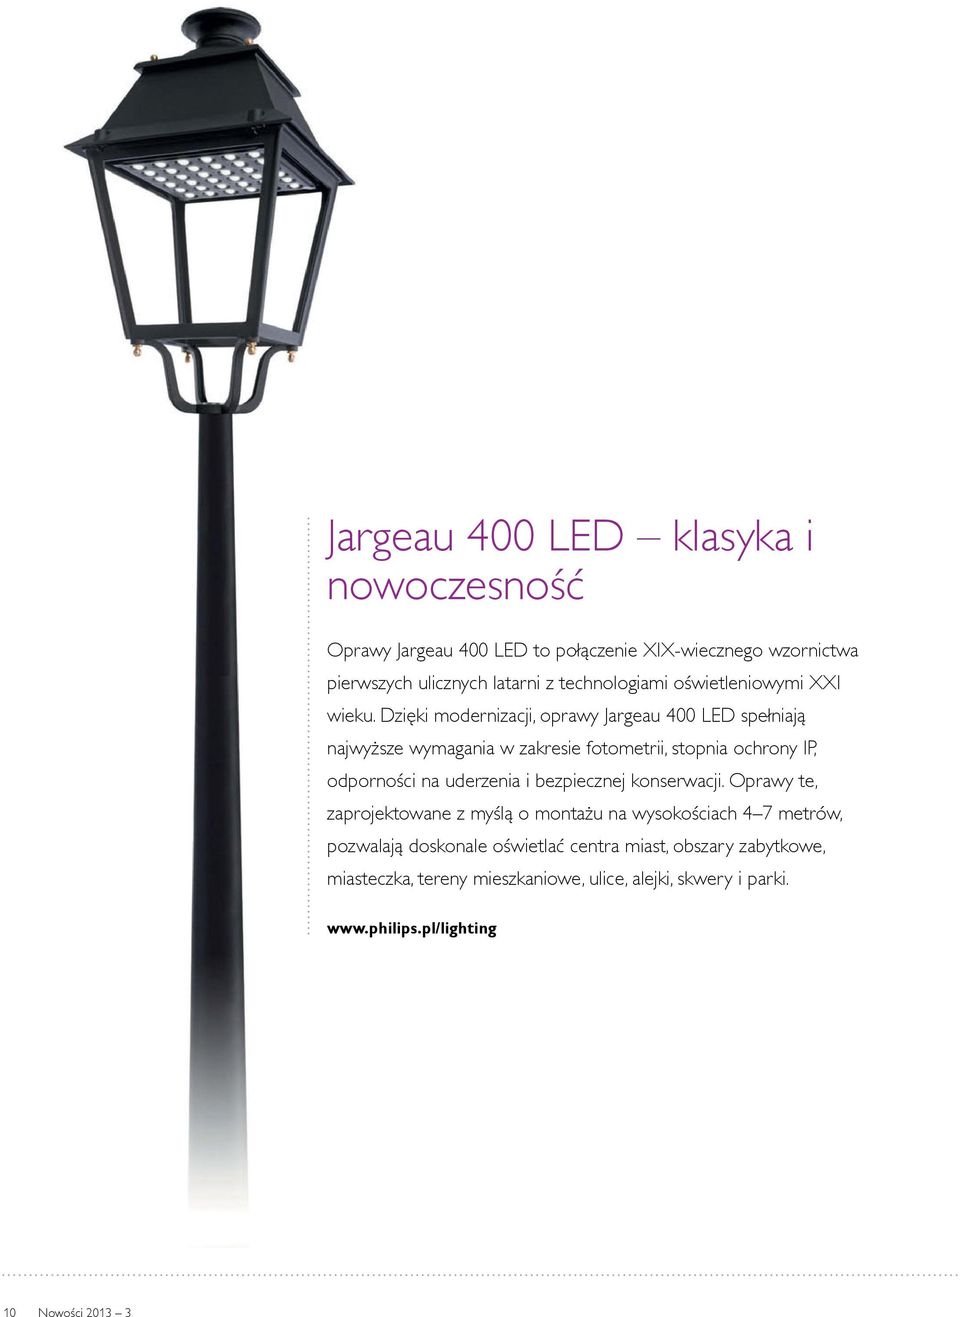 Dzięki modernizacji, oprawy Jargeau 400 LED spełniają najwyższe wymagania w zakresie fotometrii, stopnia ochrony IP, odporności na uderzenia i